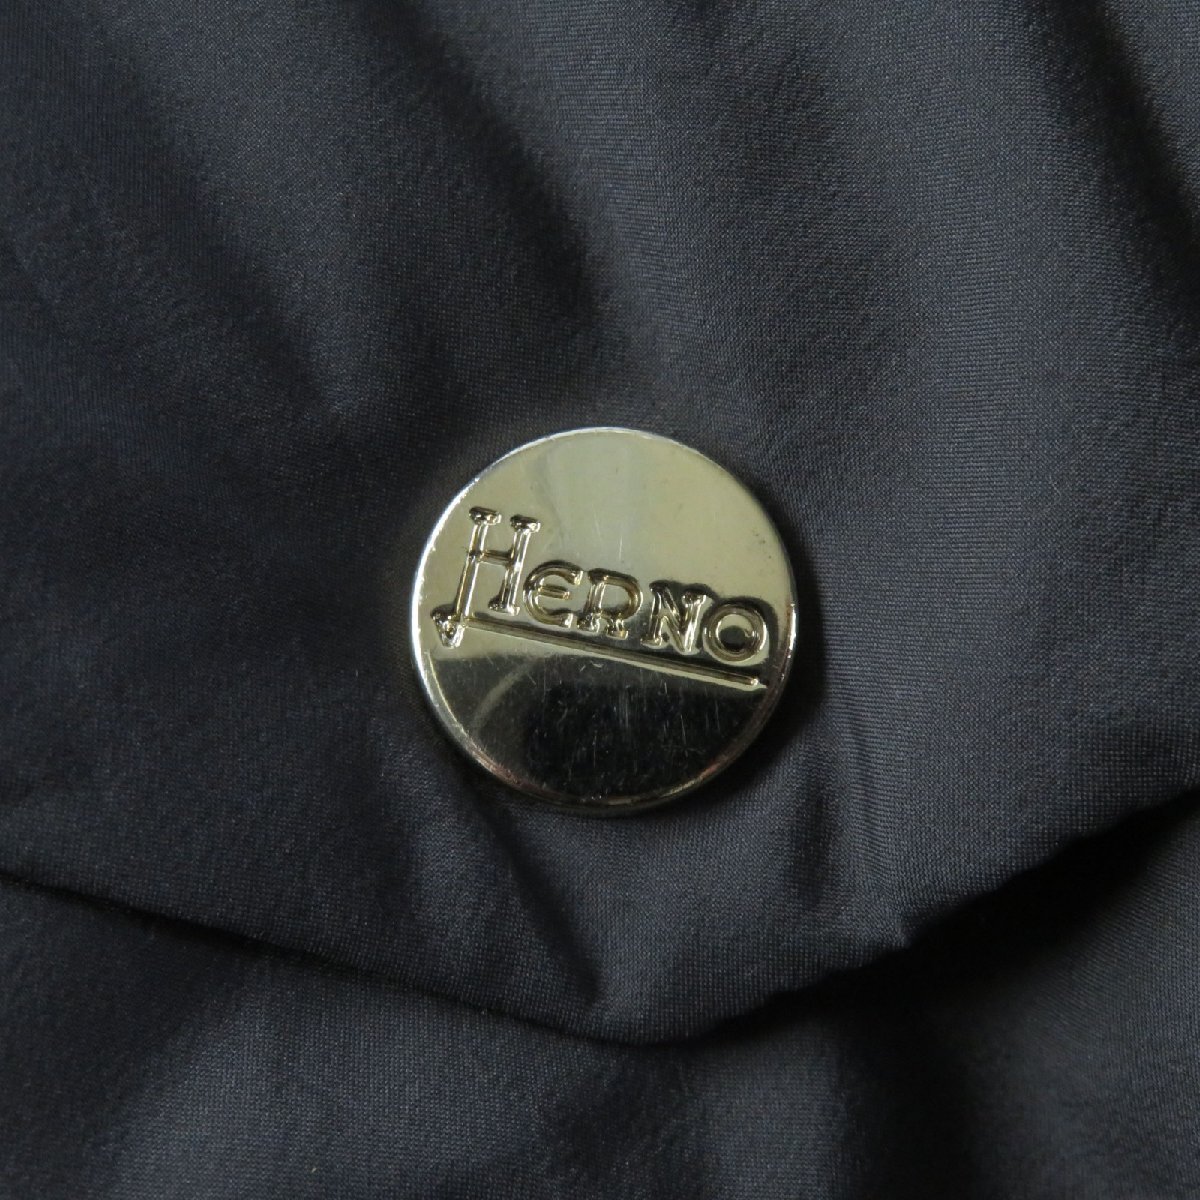  прекрасный товар *Herno ад no19 год производства PI1036D Logo plate есть ZIP UP воротник-стойка пуховик серый 38 Италия производства стандартный товар женский 